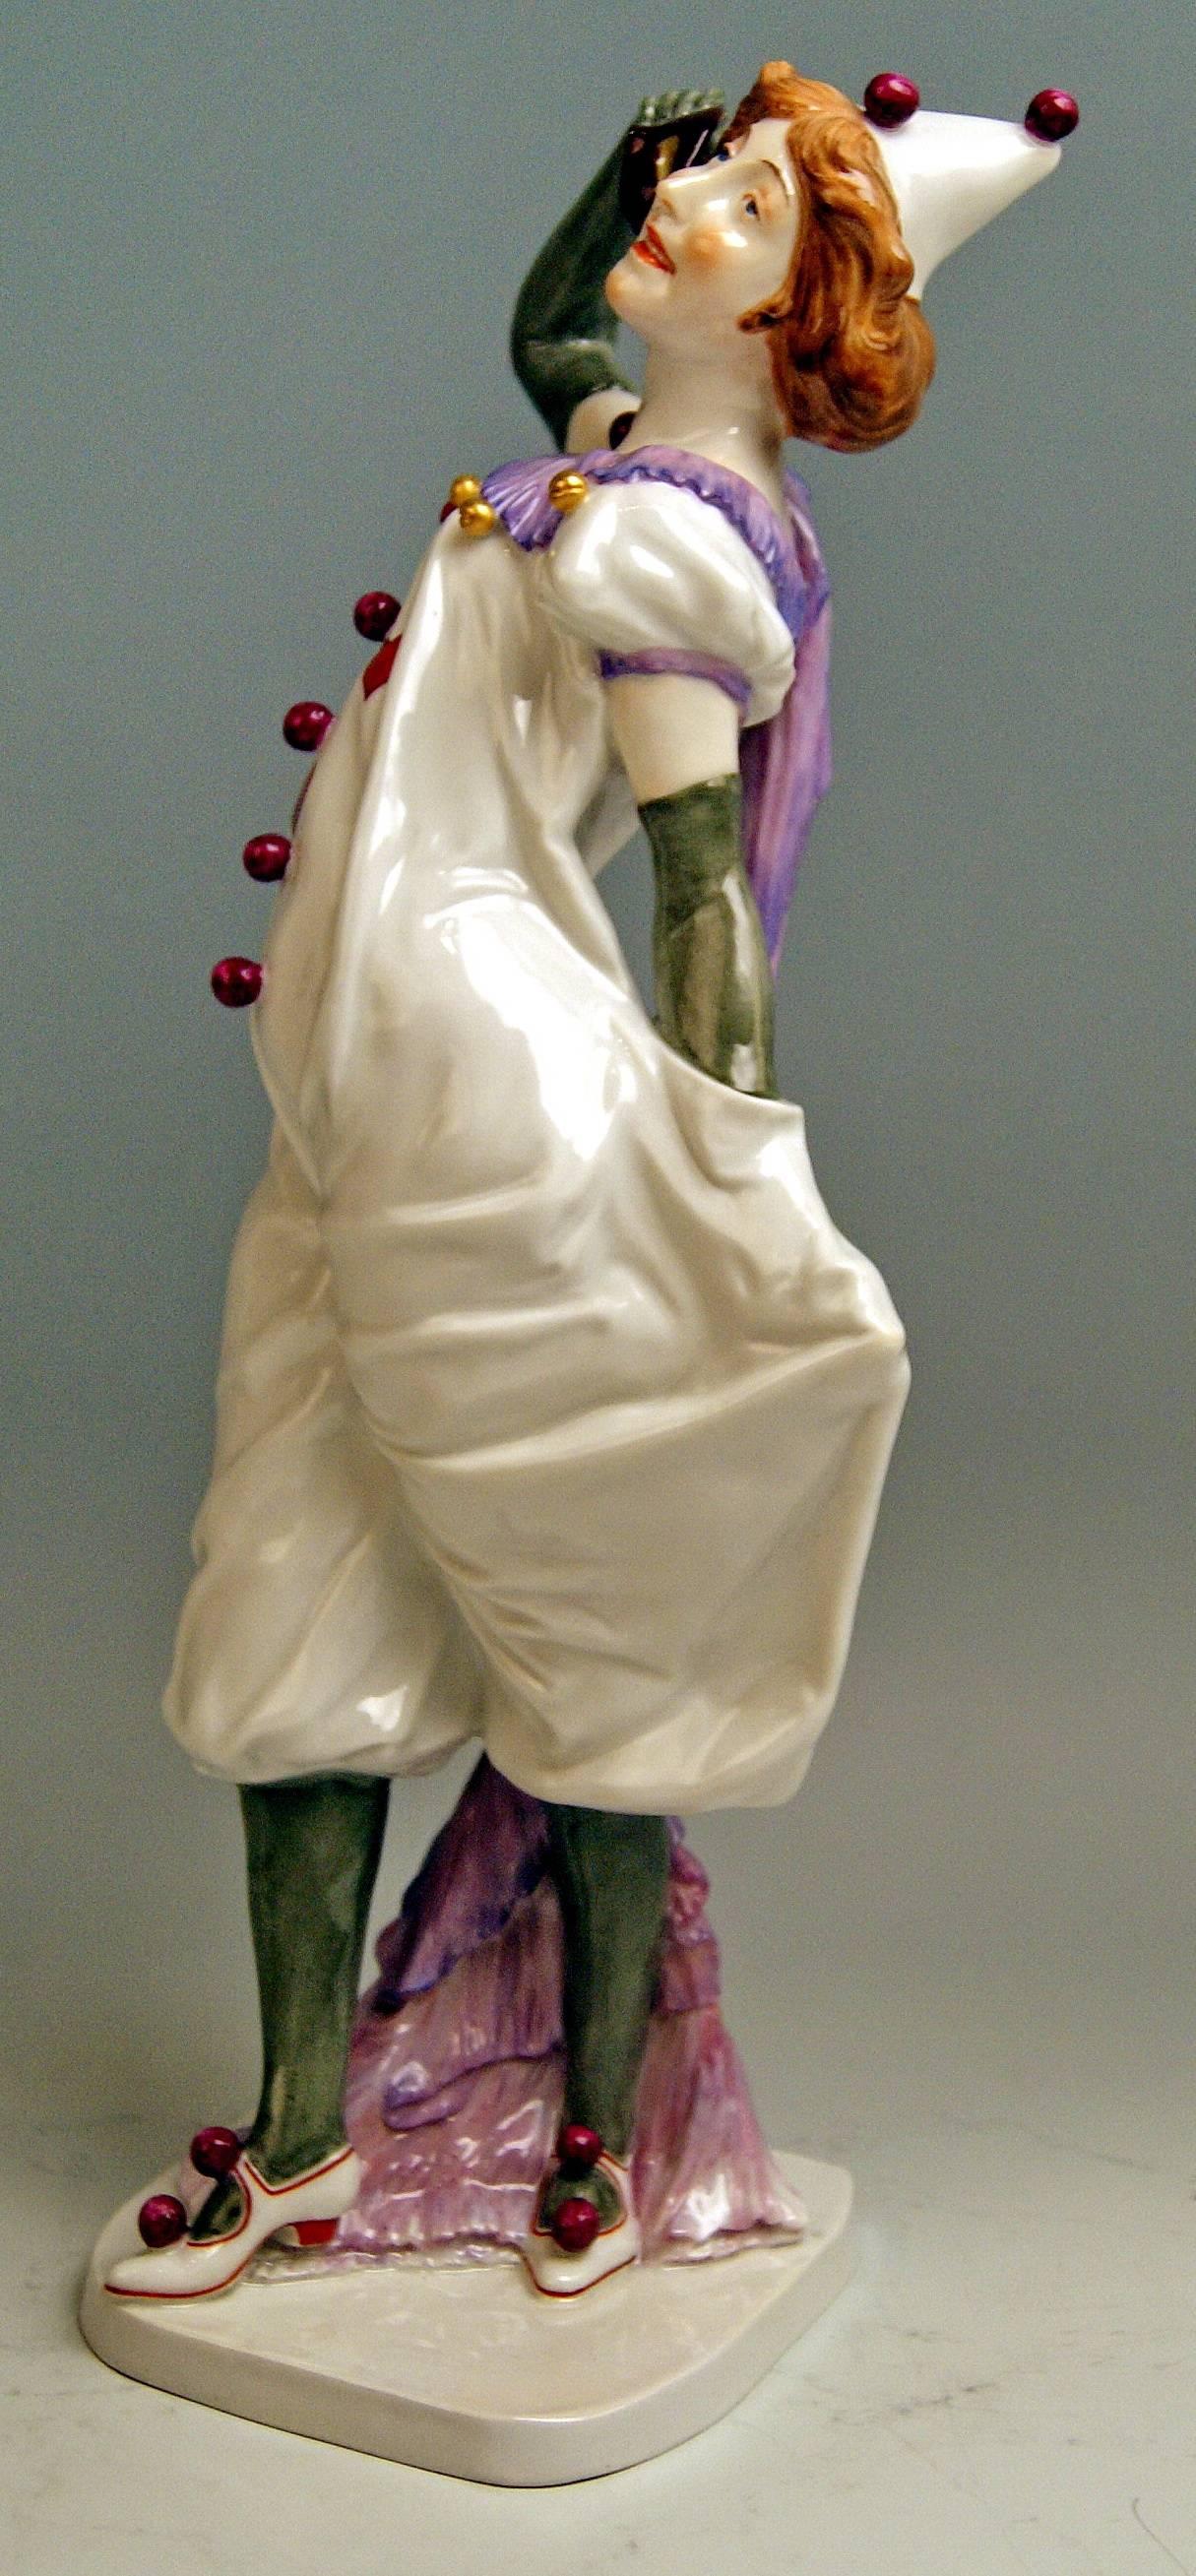 Meissen most remarkable figurine: Pierrette (=Female Pierrot)

Measures / dimensions:
height: 13.58 inches / 34.5 cm 
width: 4.33 inches / 11.0 cm
depth: 4.13 inches / 10.5 cm

Manufactory: Meissen
Hallmarked: Blue Meissen sword mark (glazed